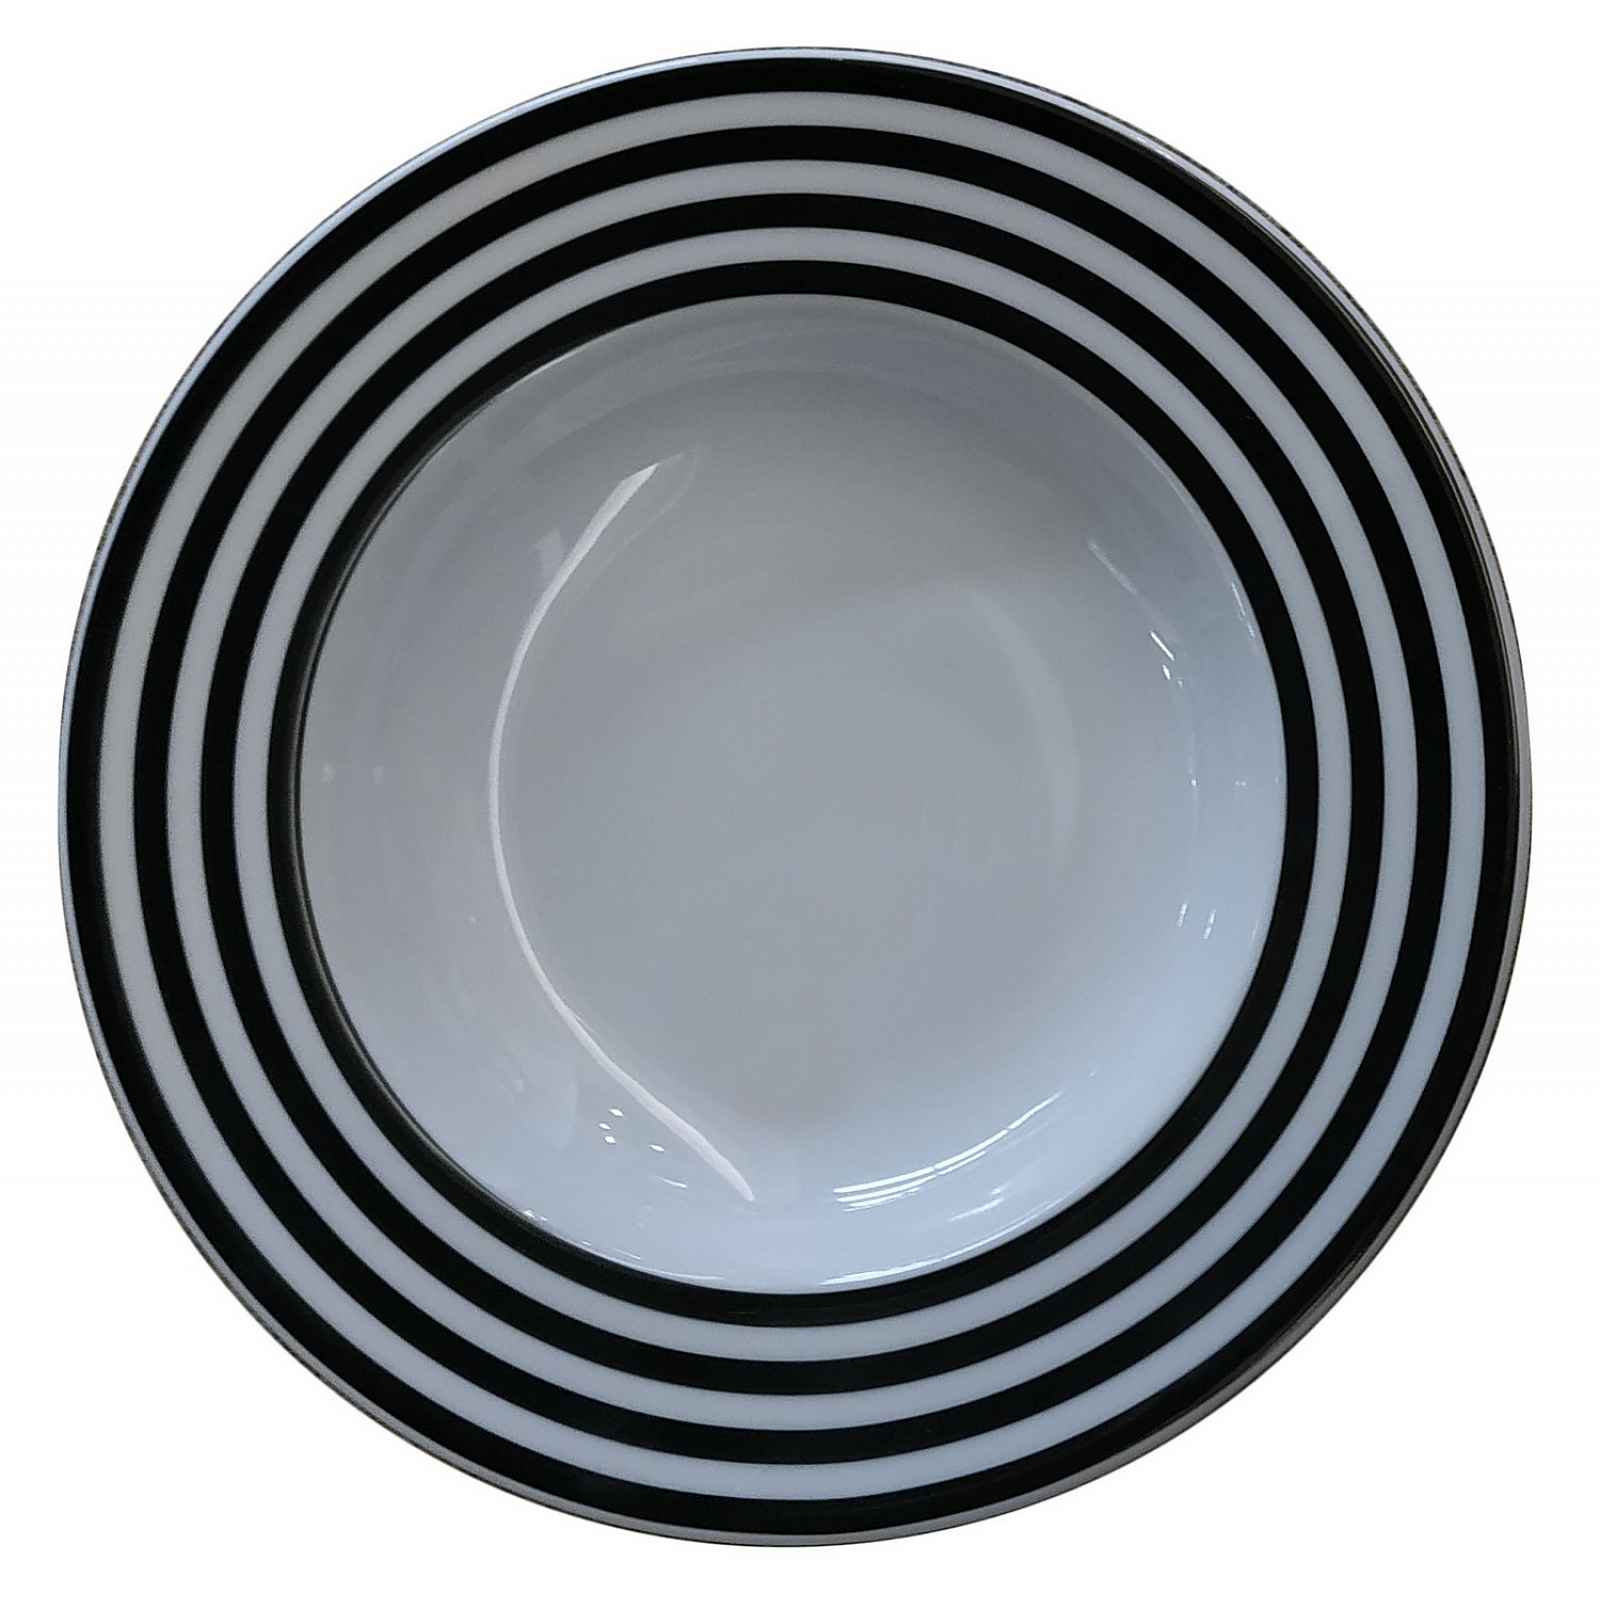 Hluboký talíř ⌀ 22 cm Basic Ringe, černé proužky